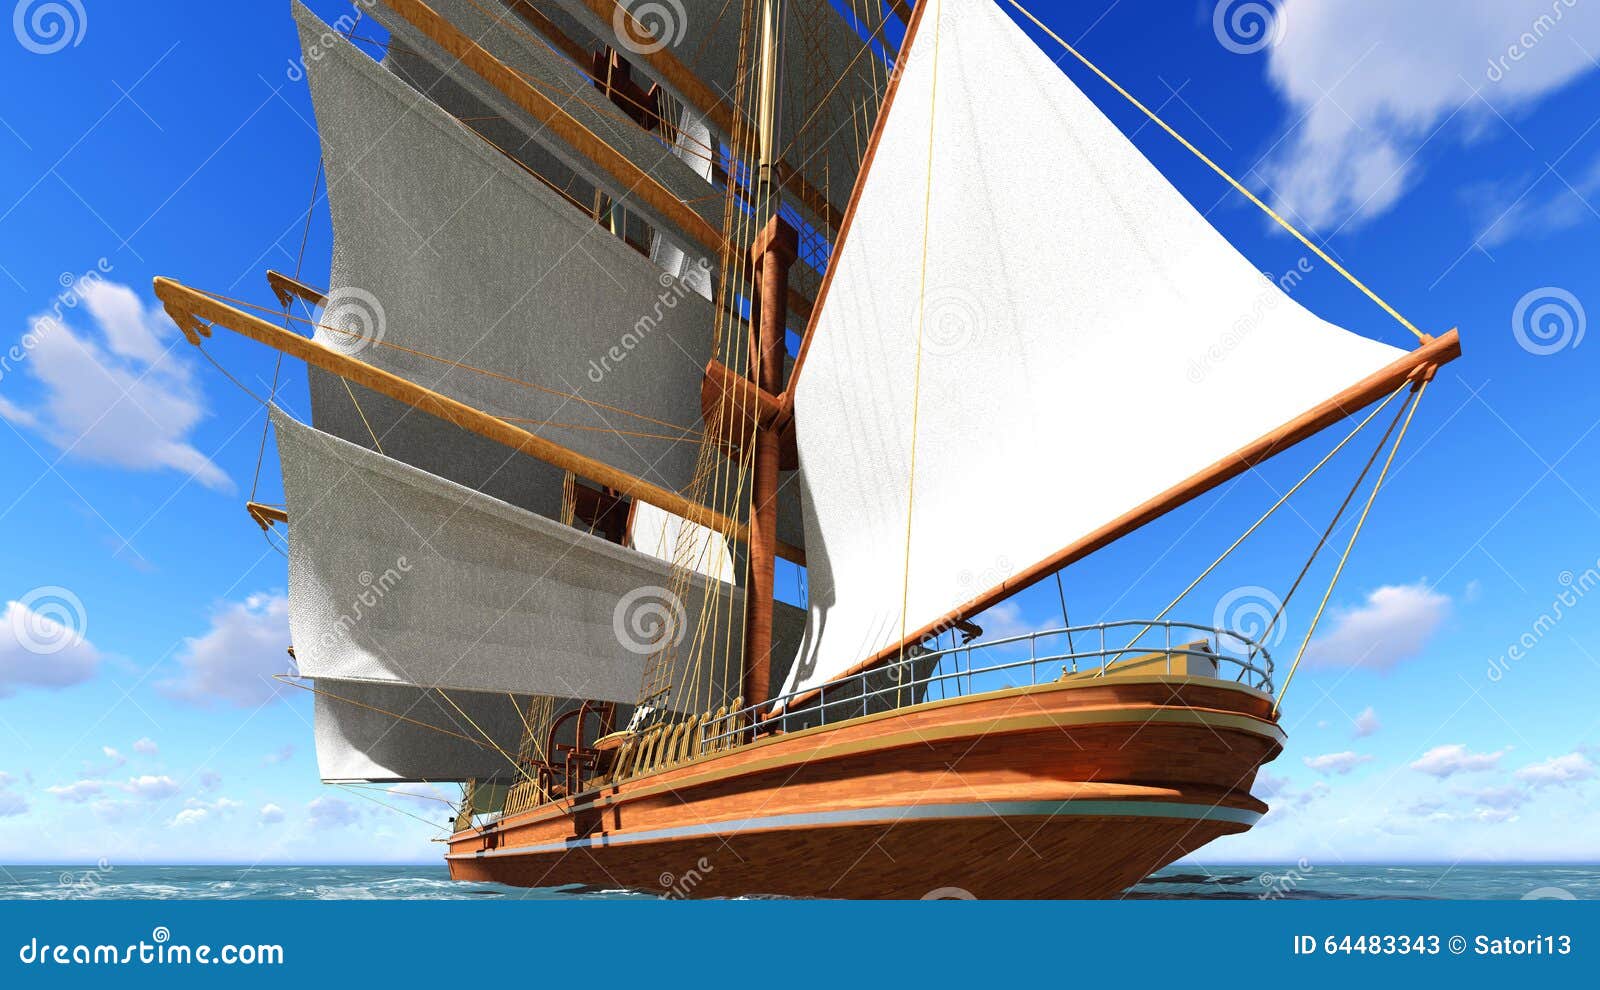 pirate brigantine at sea